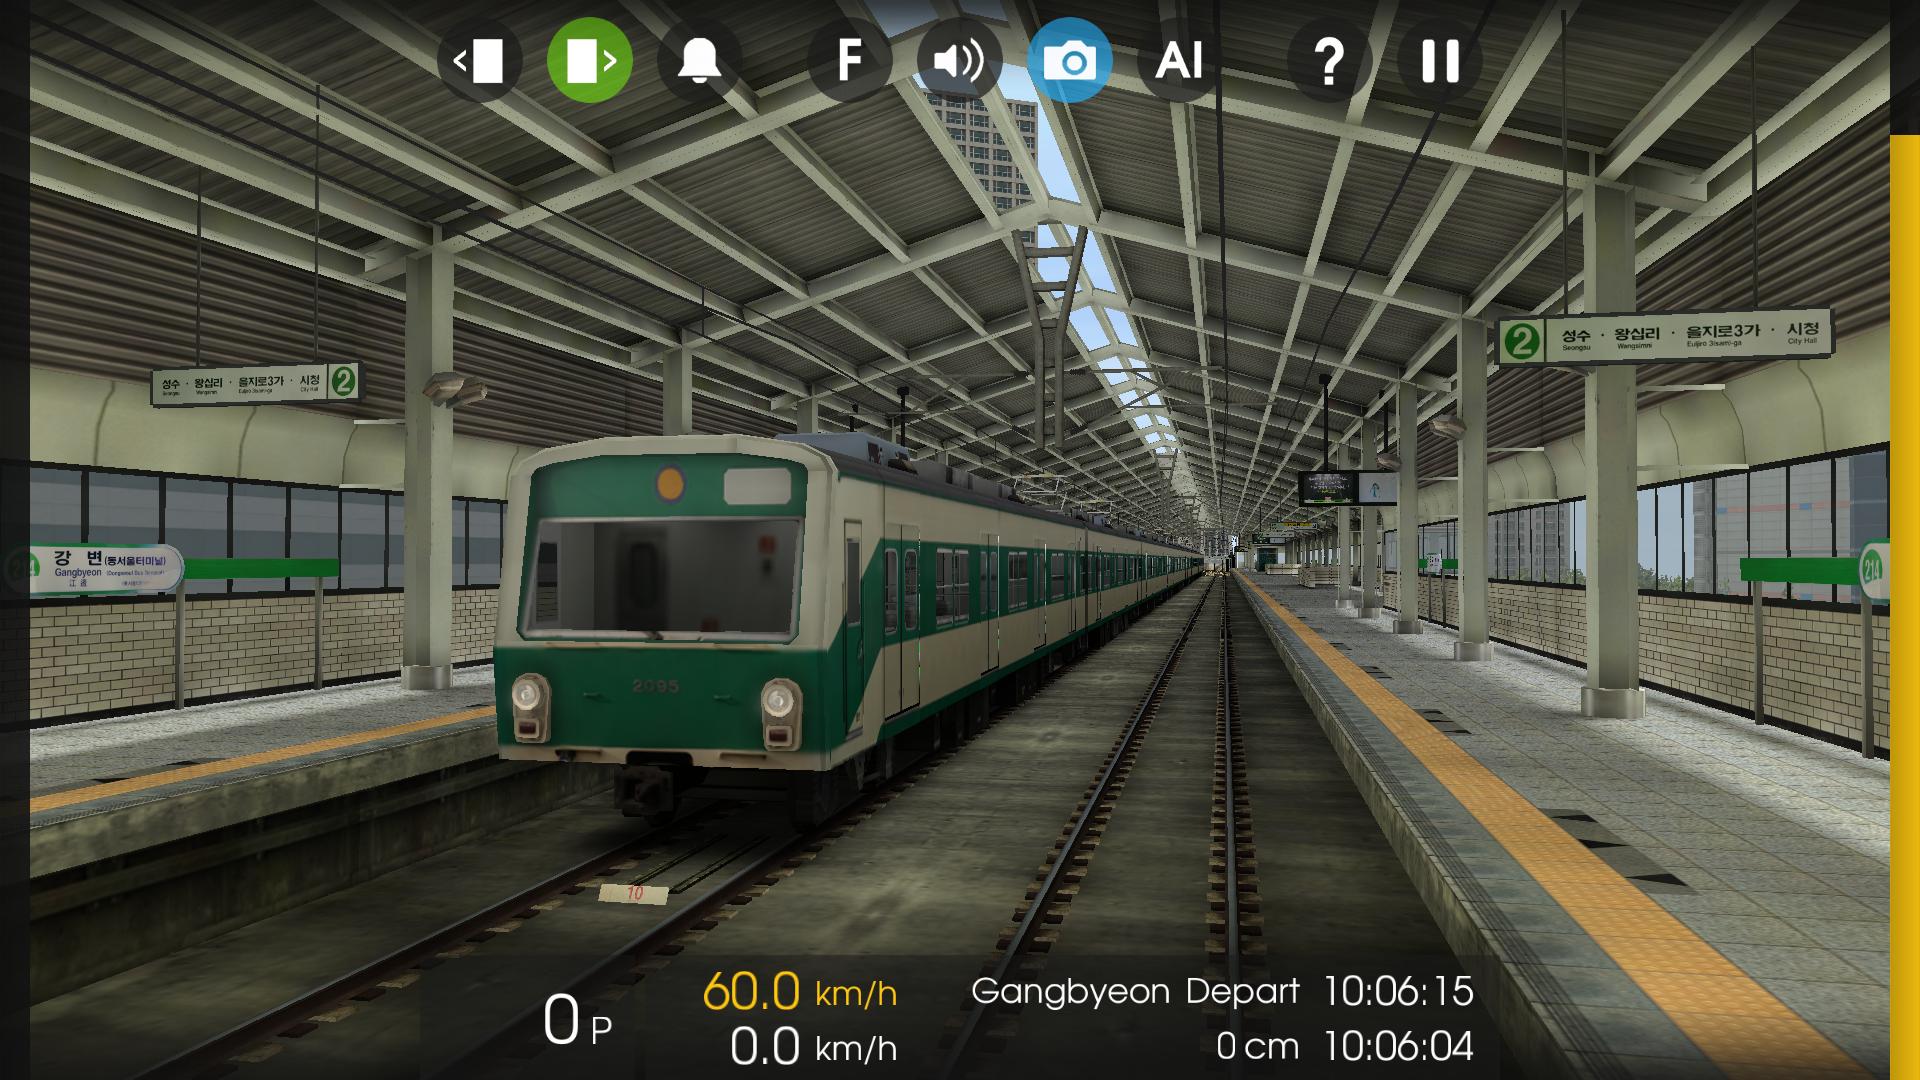 Игра про поезд на телефон. Симулятор поезда Train Simulator. Симулятор поезда метро 2д. Hmmsim 2 Metro. Metro Simulator 2.